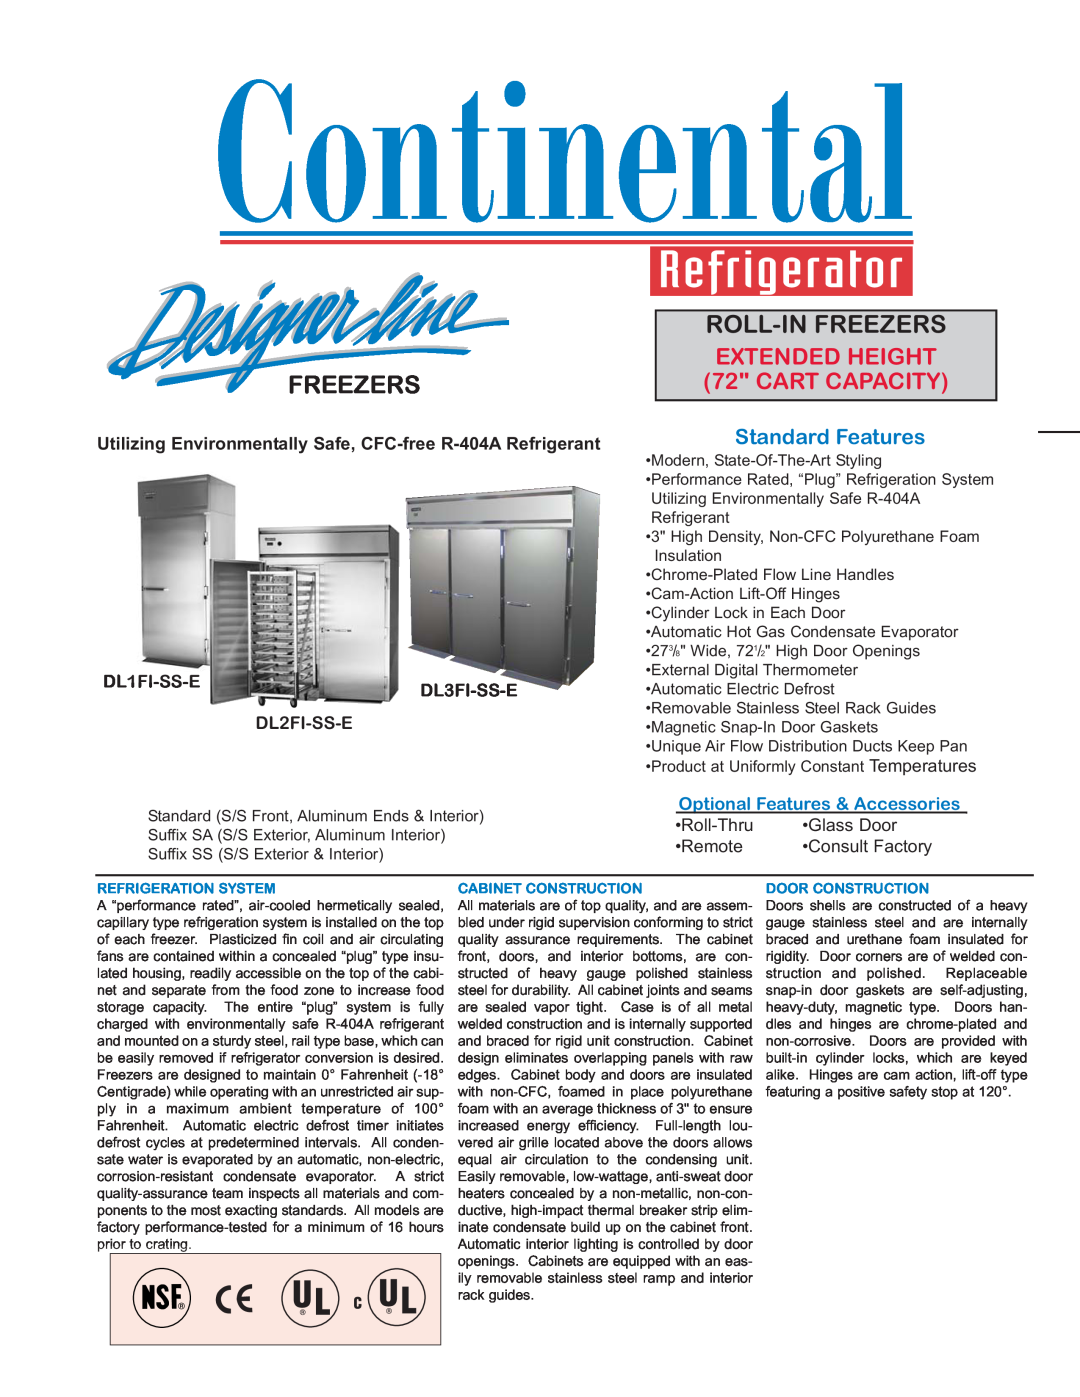 Continental Refrigerator DL2FI-SS-E manual DL1FI-SS-E, DL3FI-SS-E, Roll-Thru, Glass Door, Remote, Consult Factory 